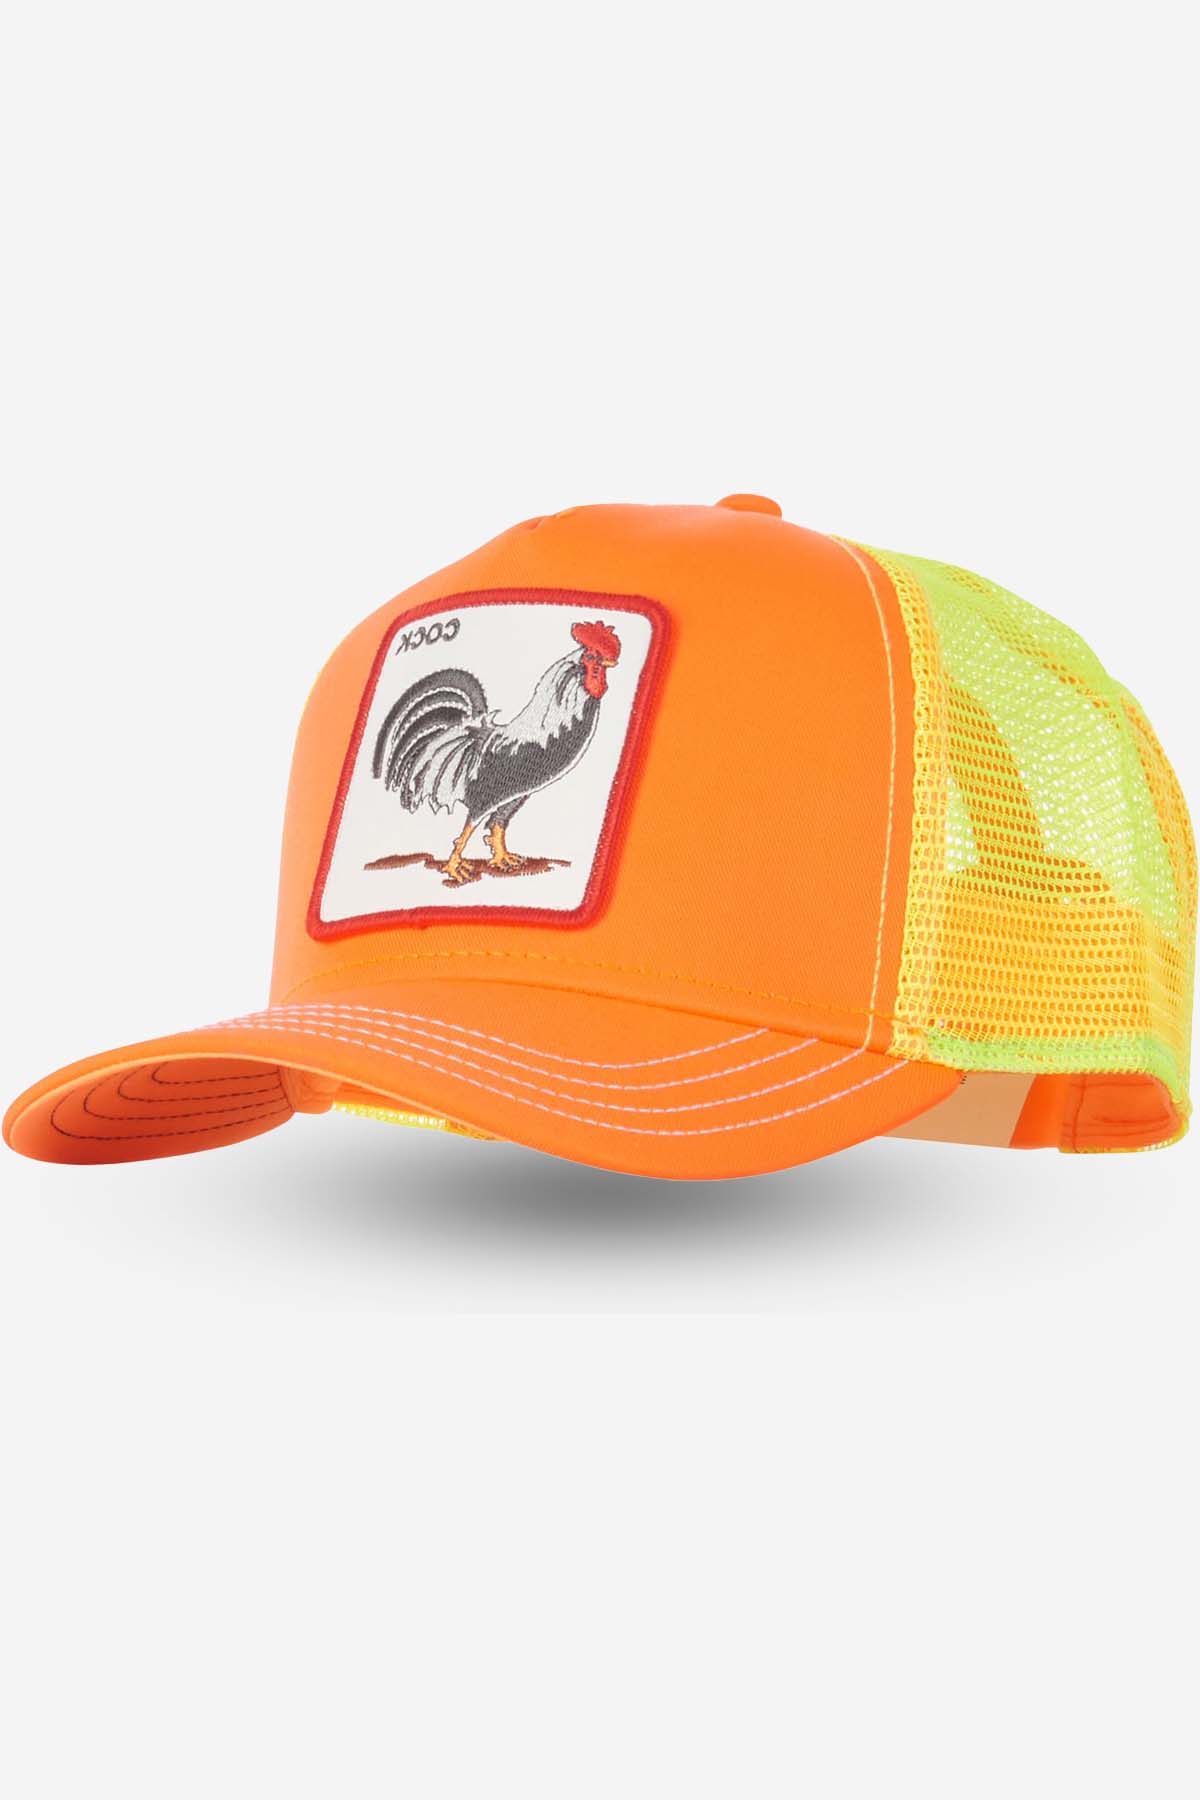 Rooster (orange)